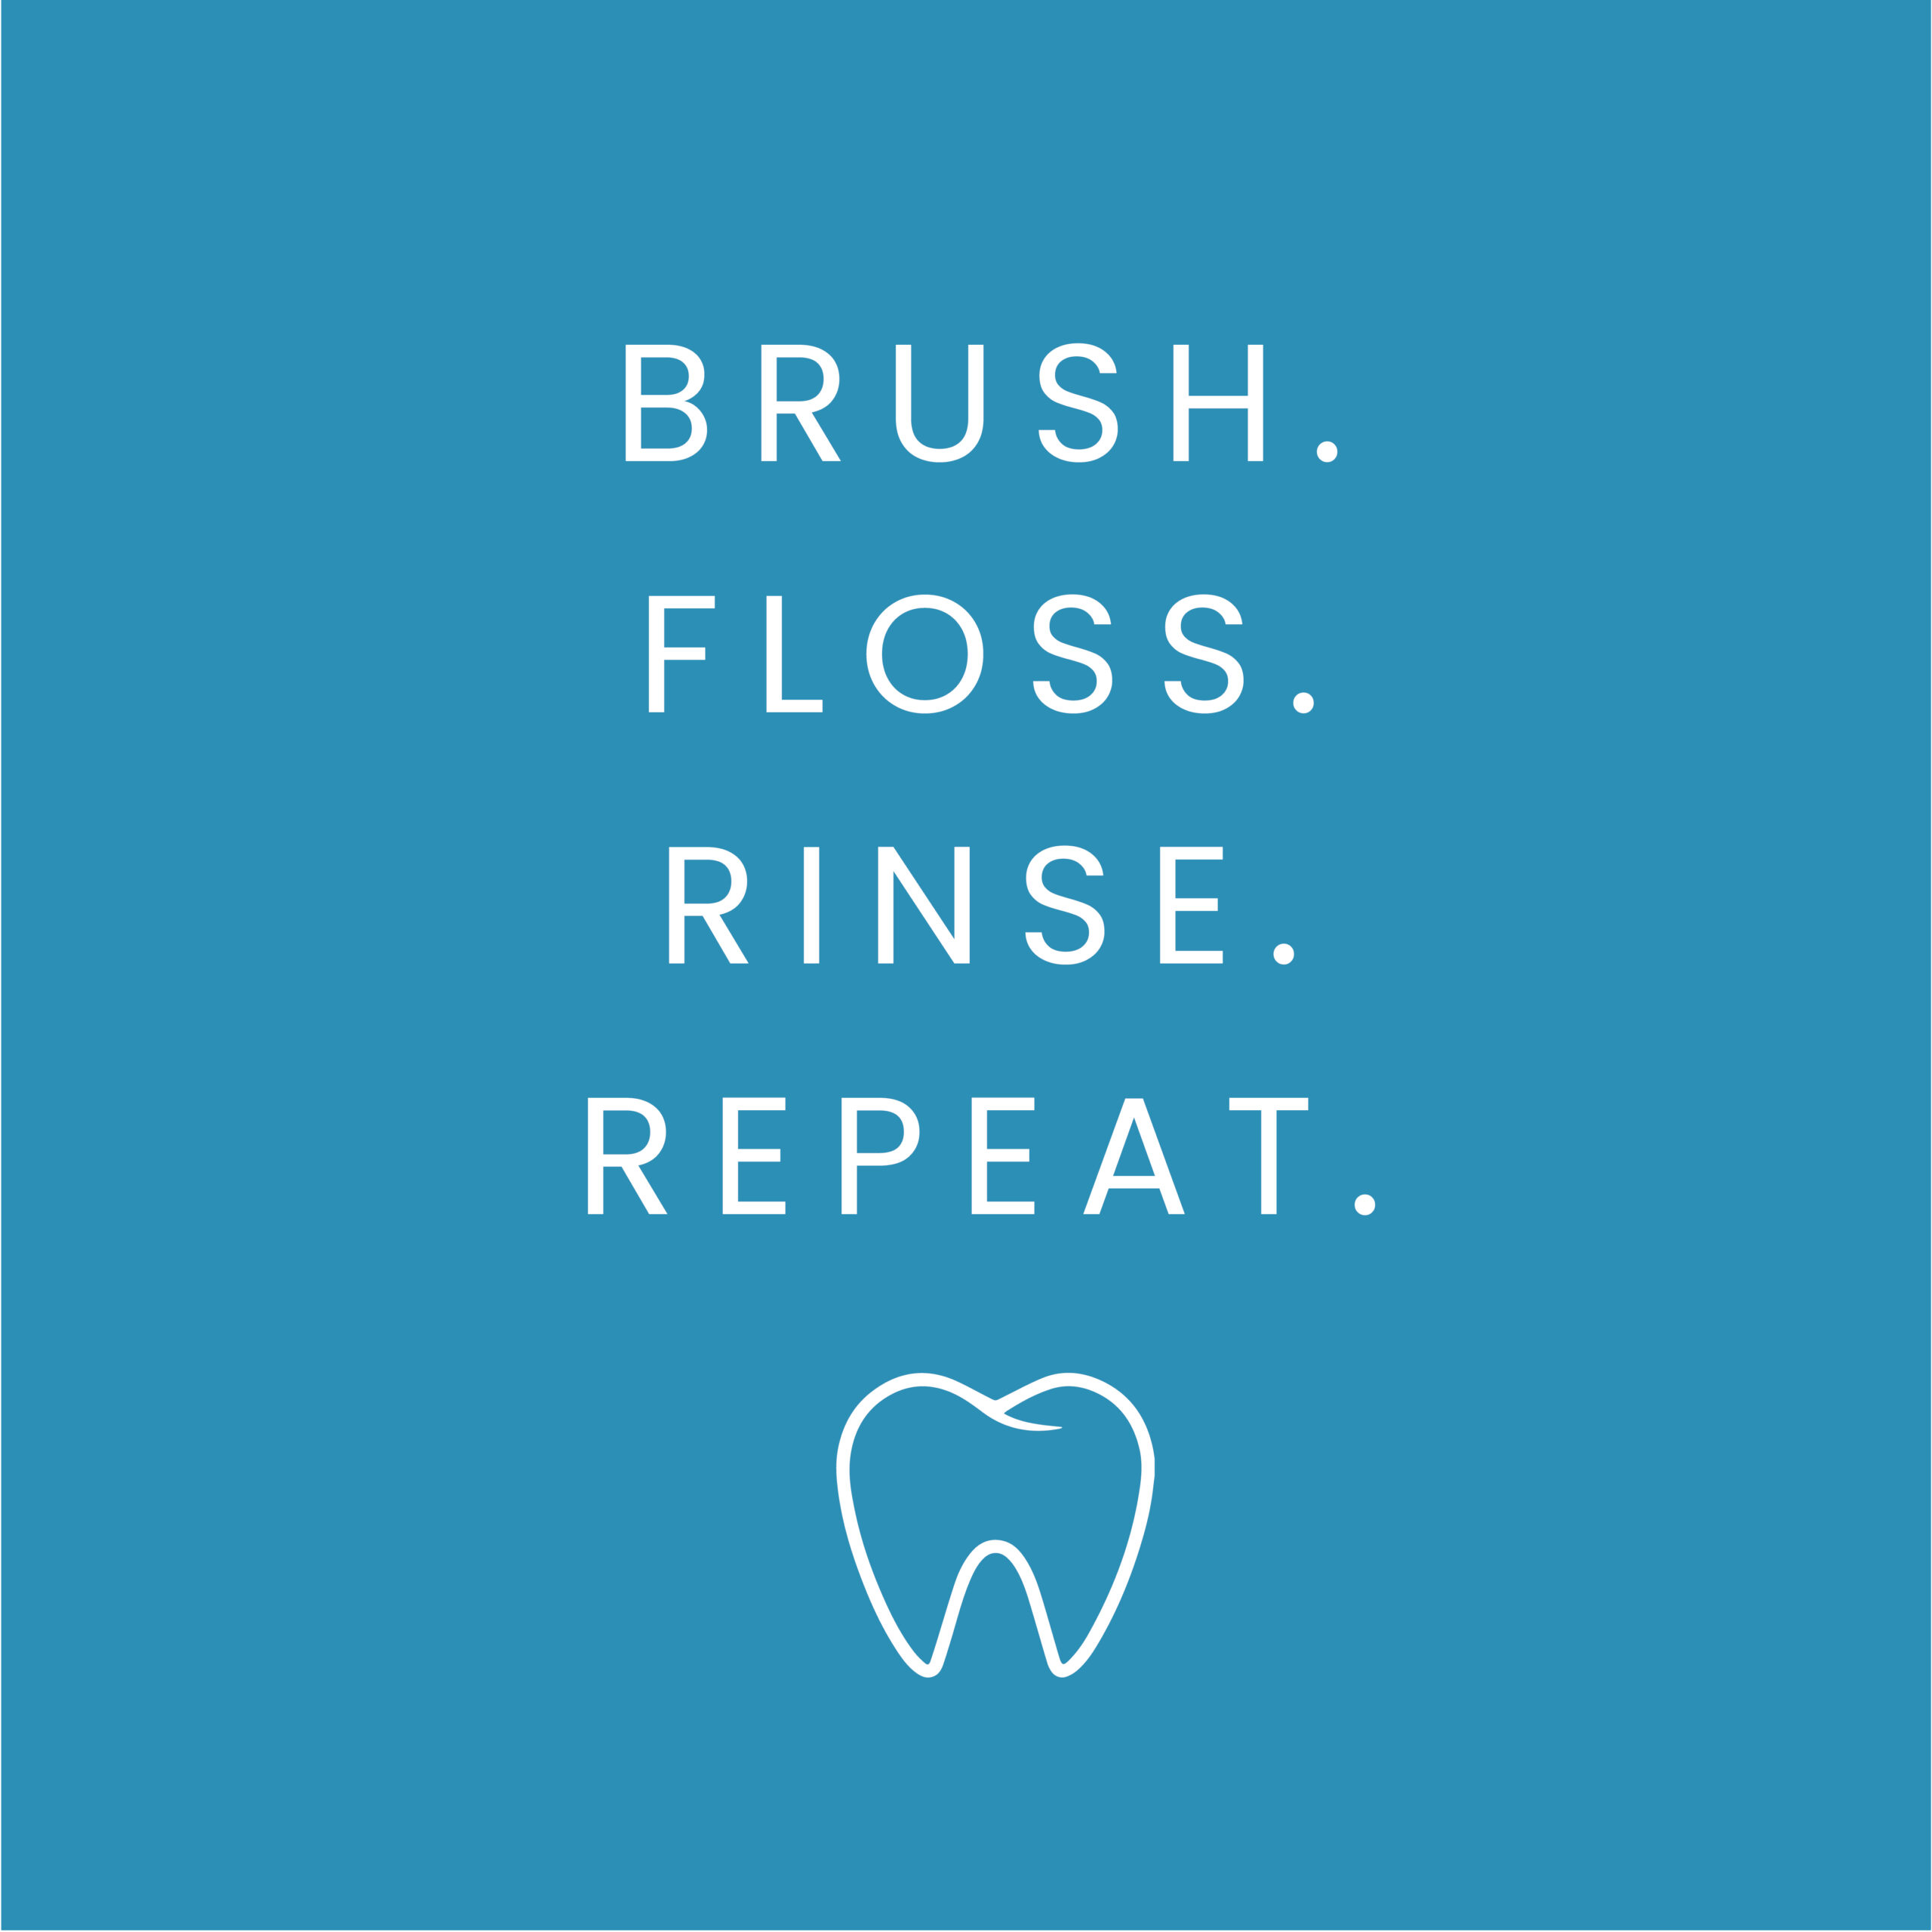 Brush. Floss. Rinse. Repeat.